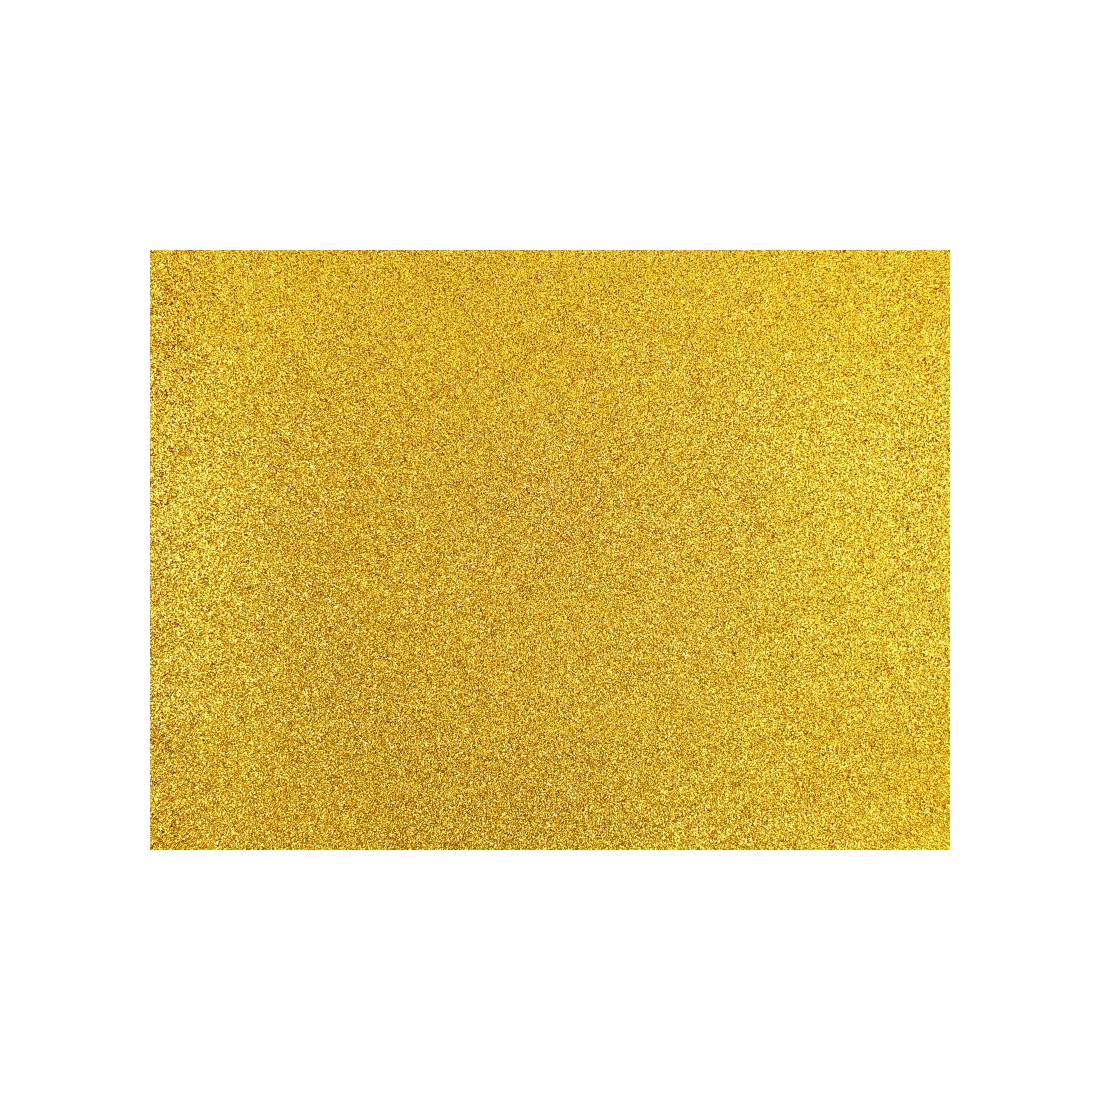 Gomma Eva Glitterata Adesiva CWR Formato 20 x 30 cm Confezione da 10 F